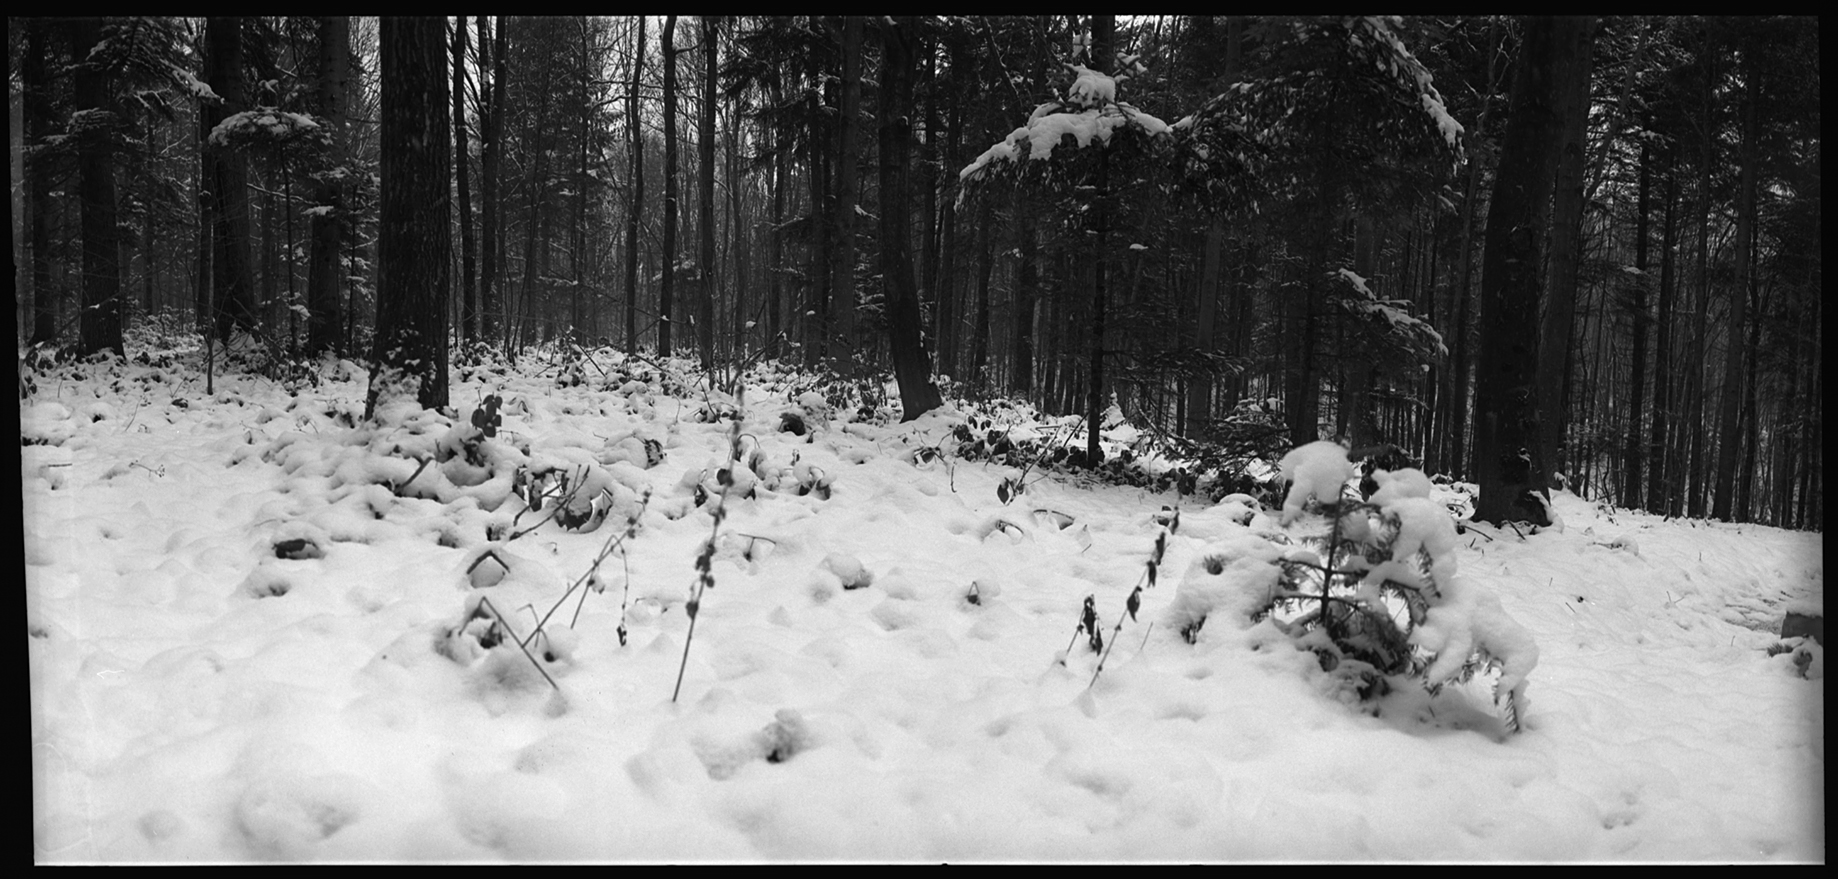   BRONITSIA FOREST Ukraine, 2005  